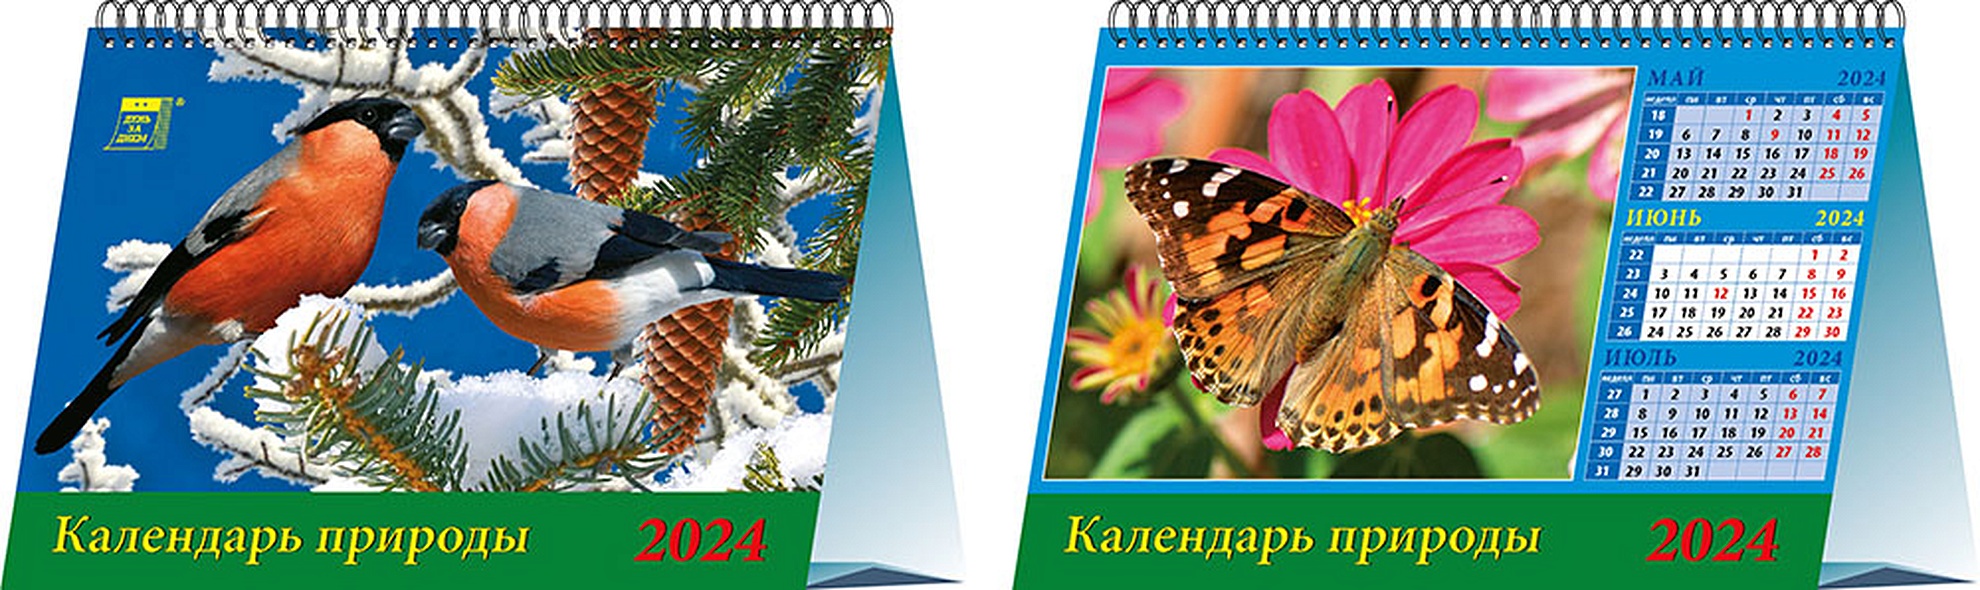 Календарь 2024г 200*140 "Календарь природы" настольный, домик - фото 1